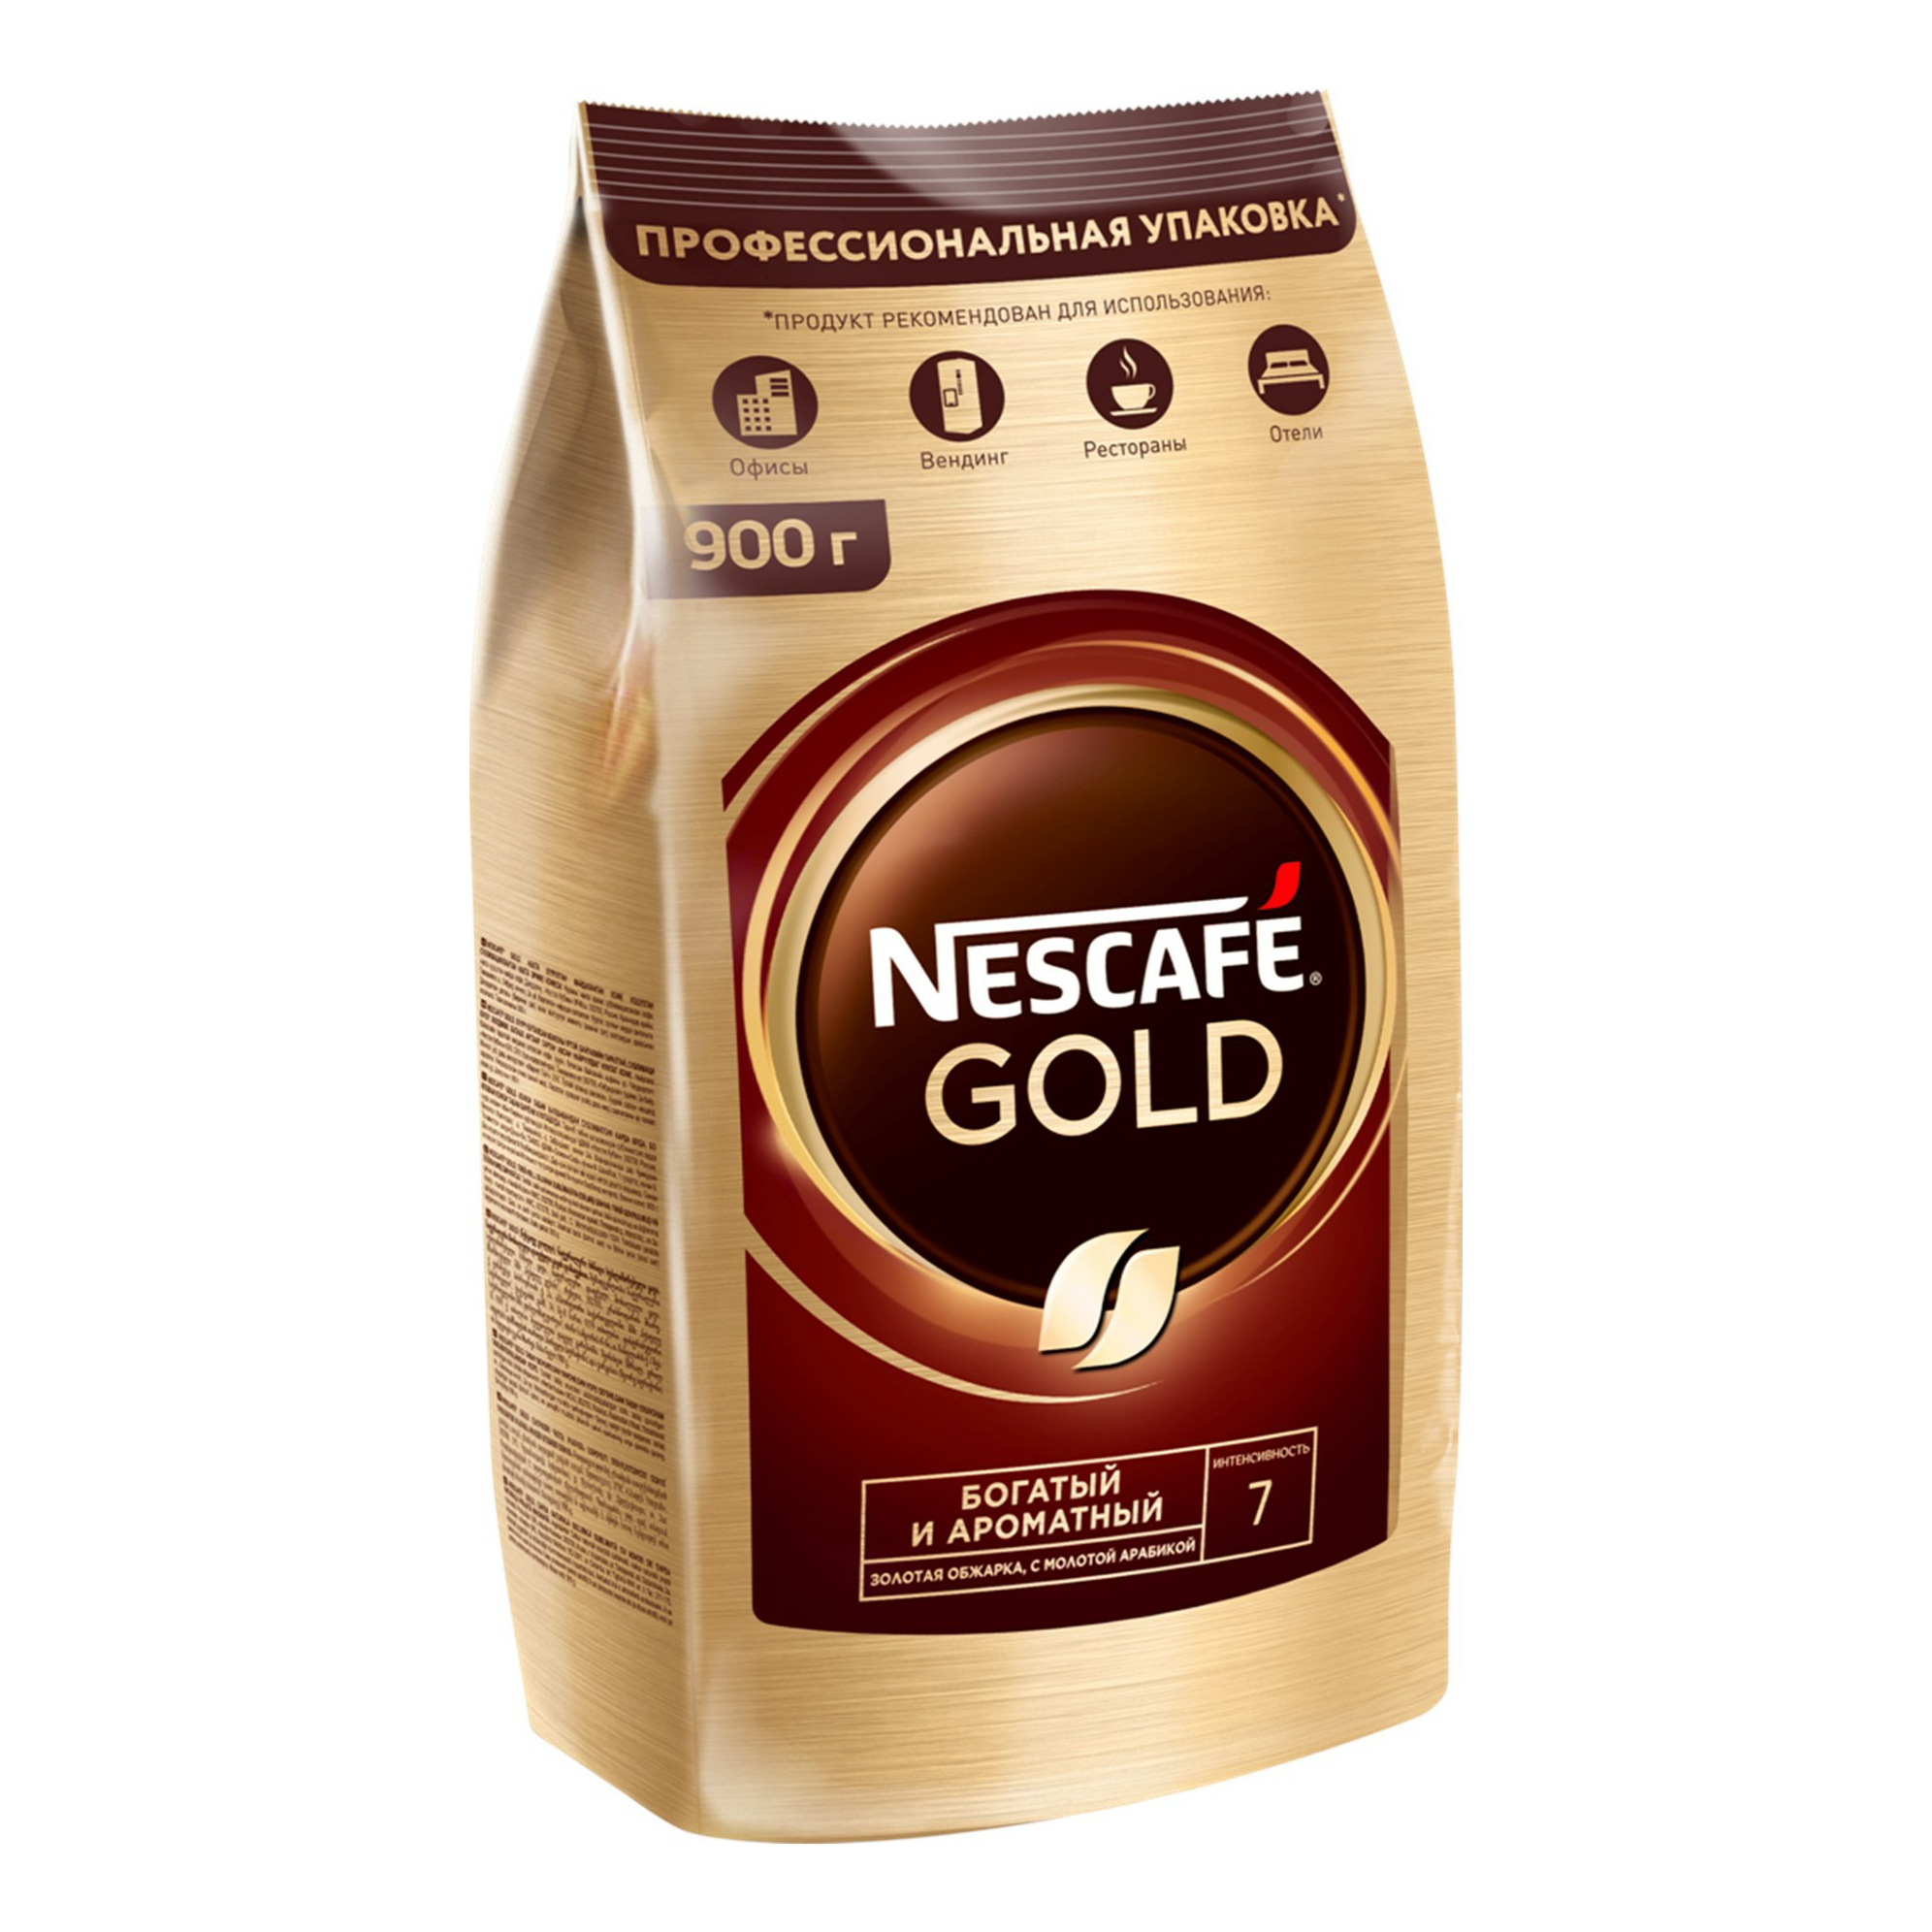 Кофе нескафе голд 500 купить. Nescafe Gold 900. Кофе растворимый Nescafe Gold 750 г. Кофе Нескафе Голд 900 гр. Nescafe кофе Gold 900г..